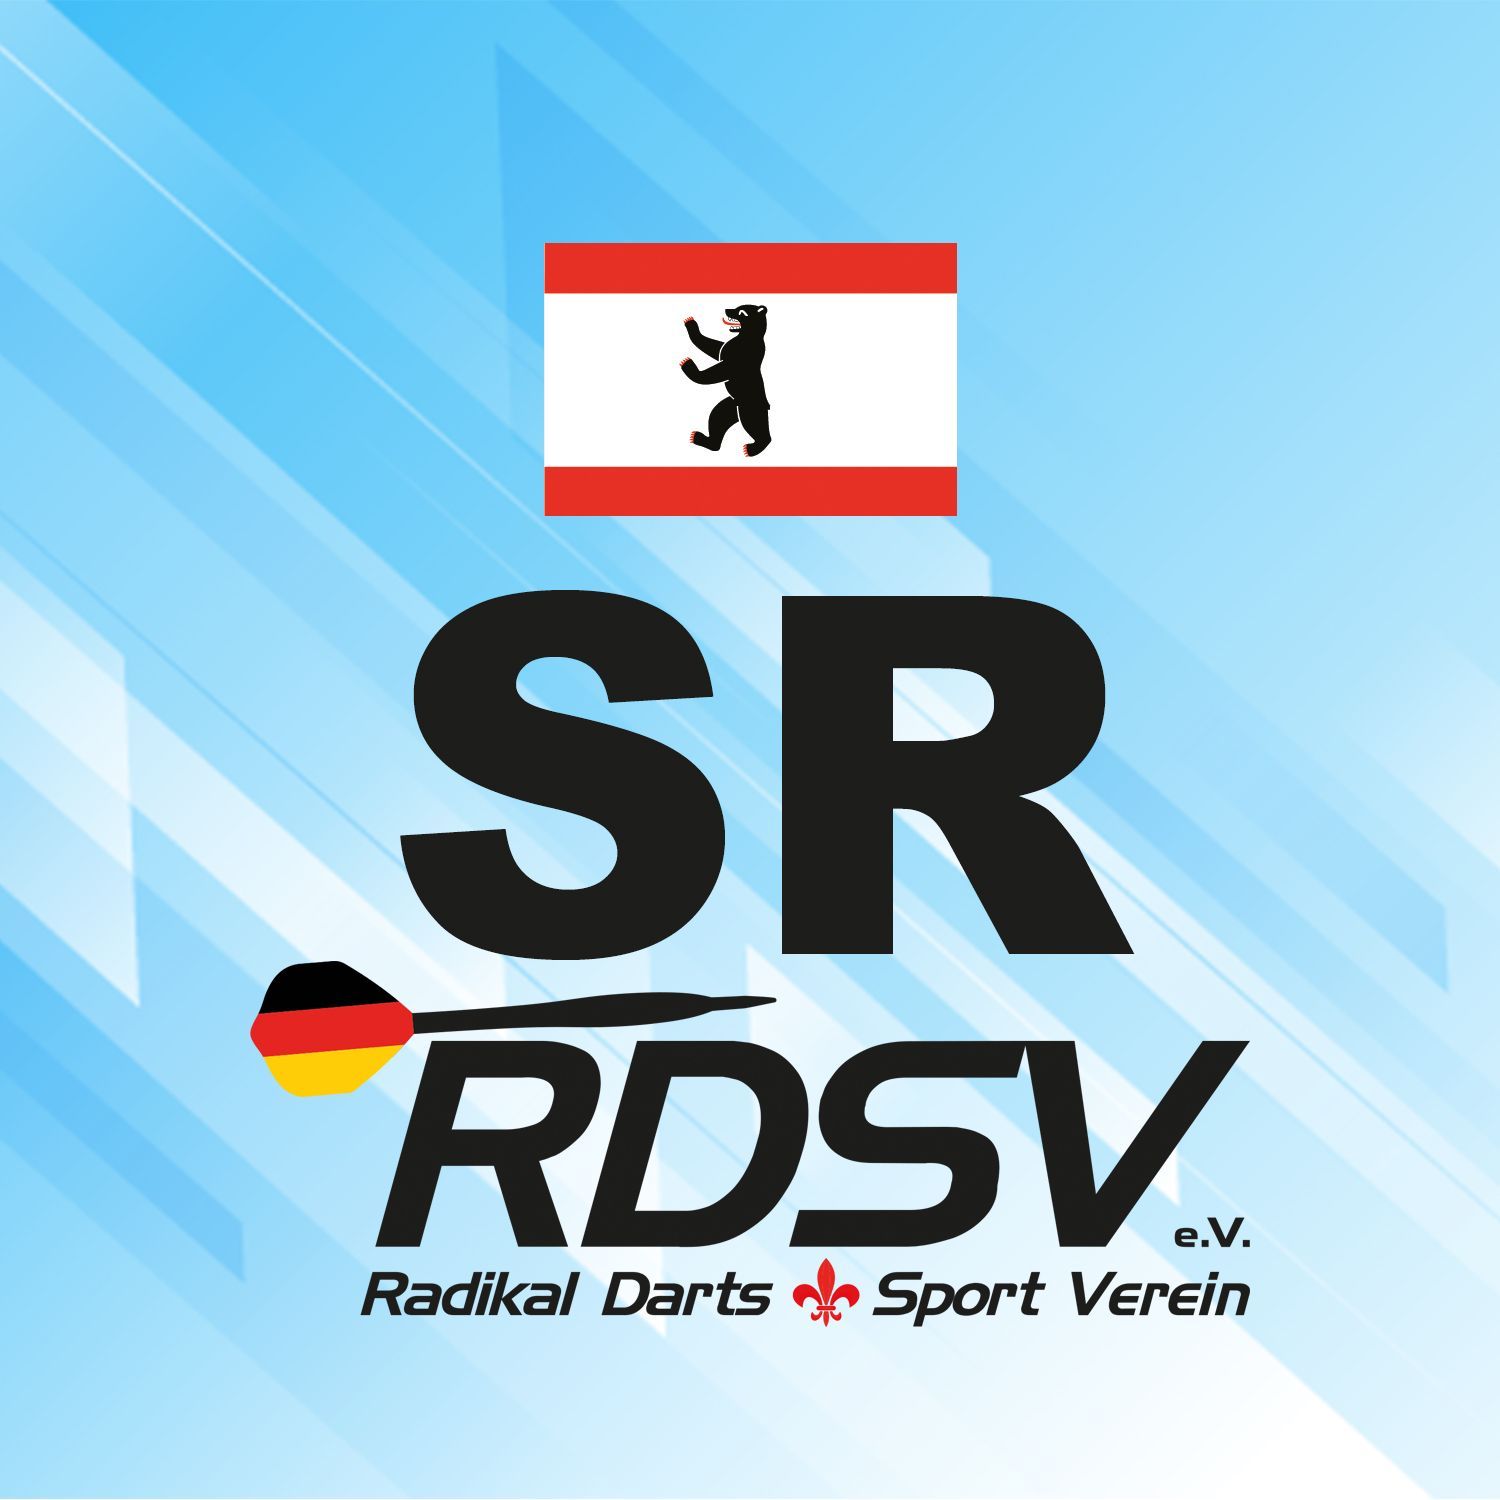 Berlin | rdsvev.org (RDSV e.V.)